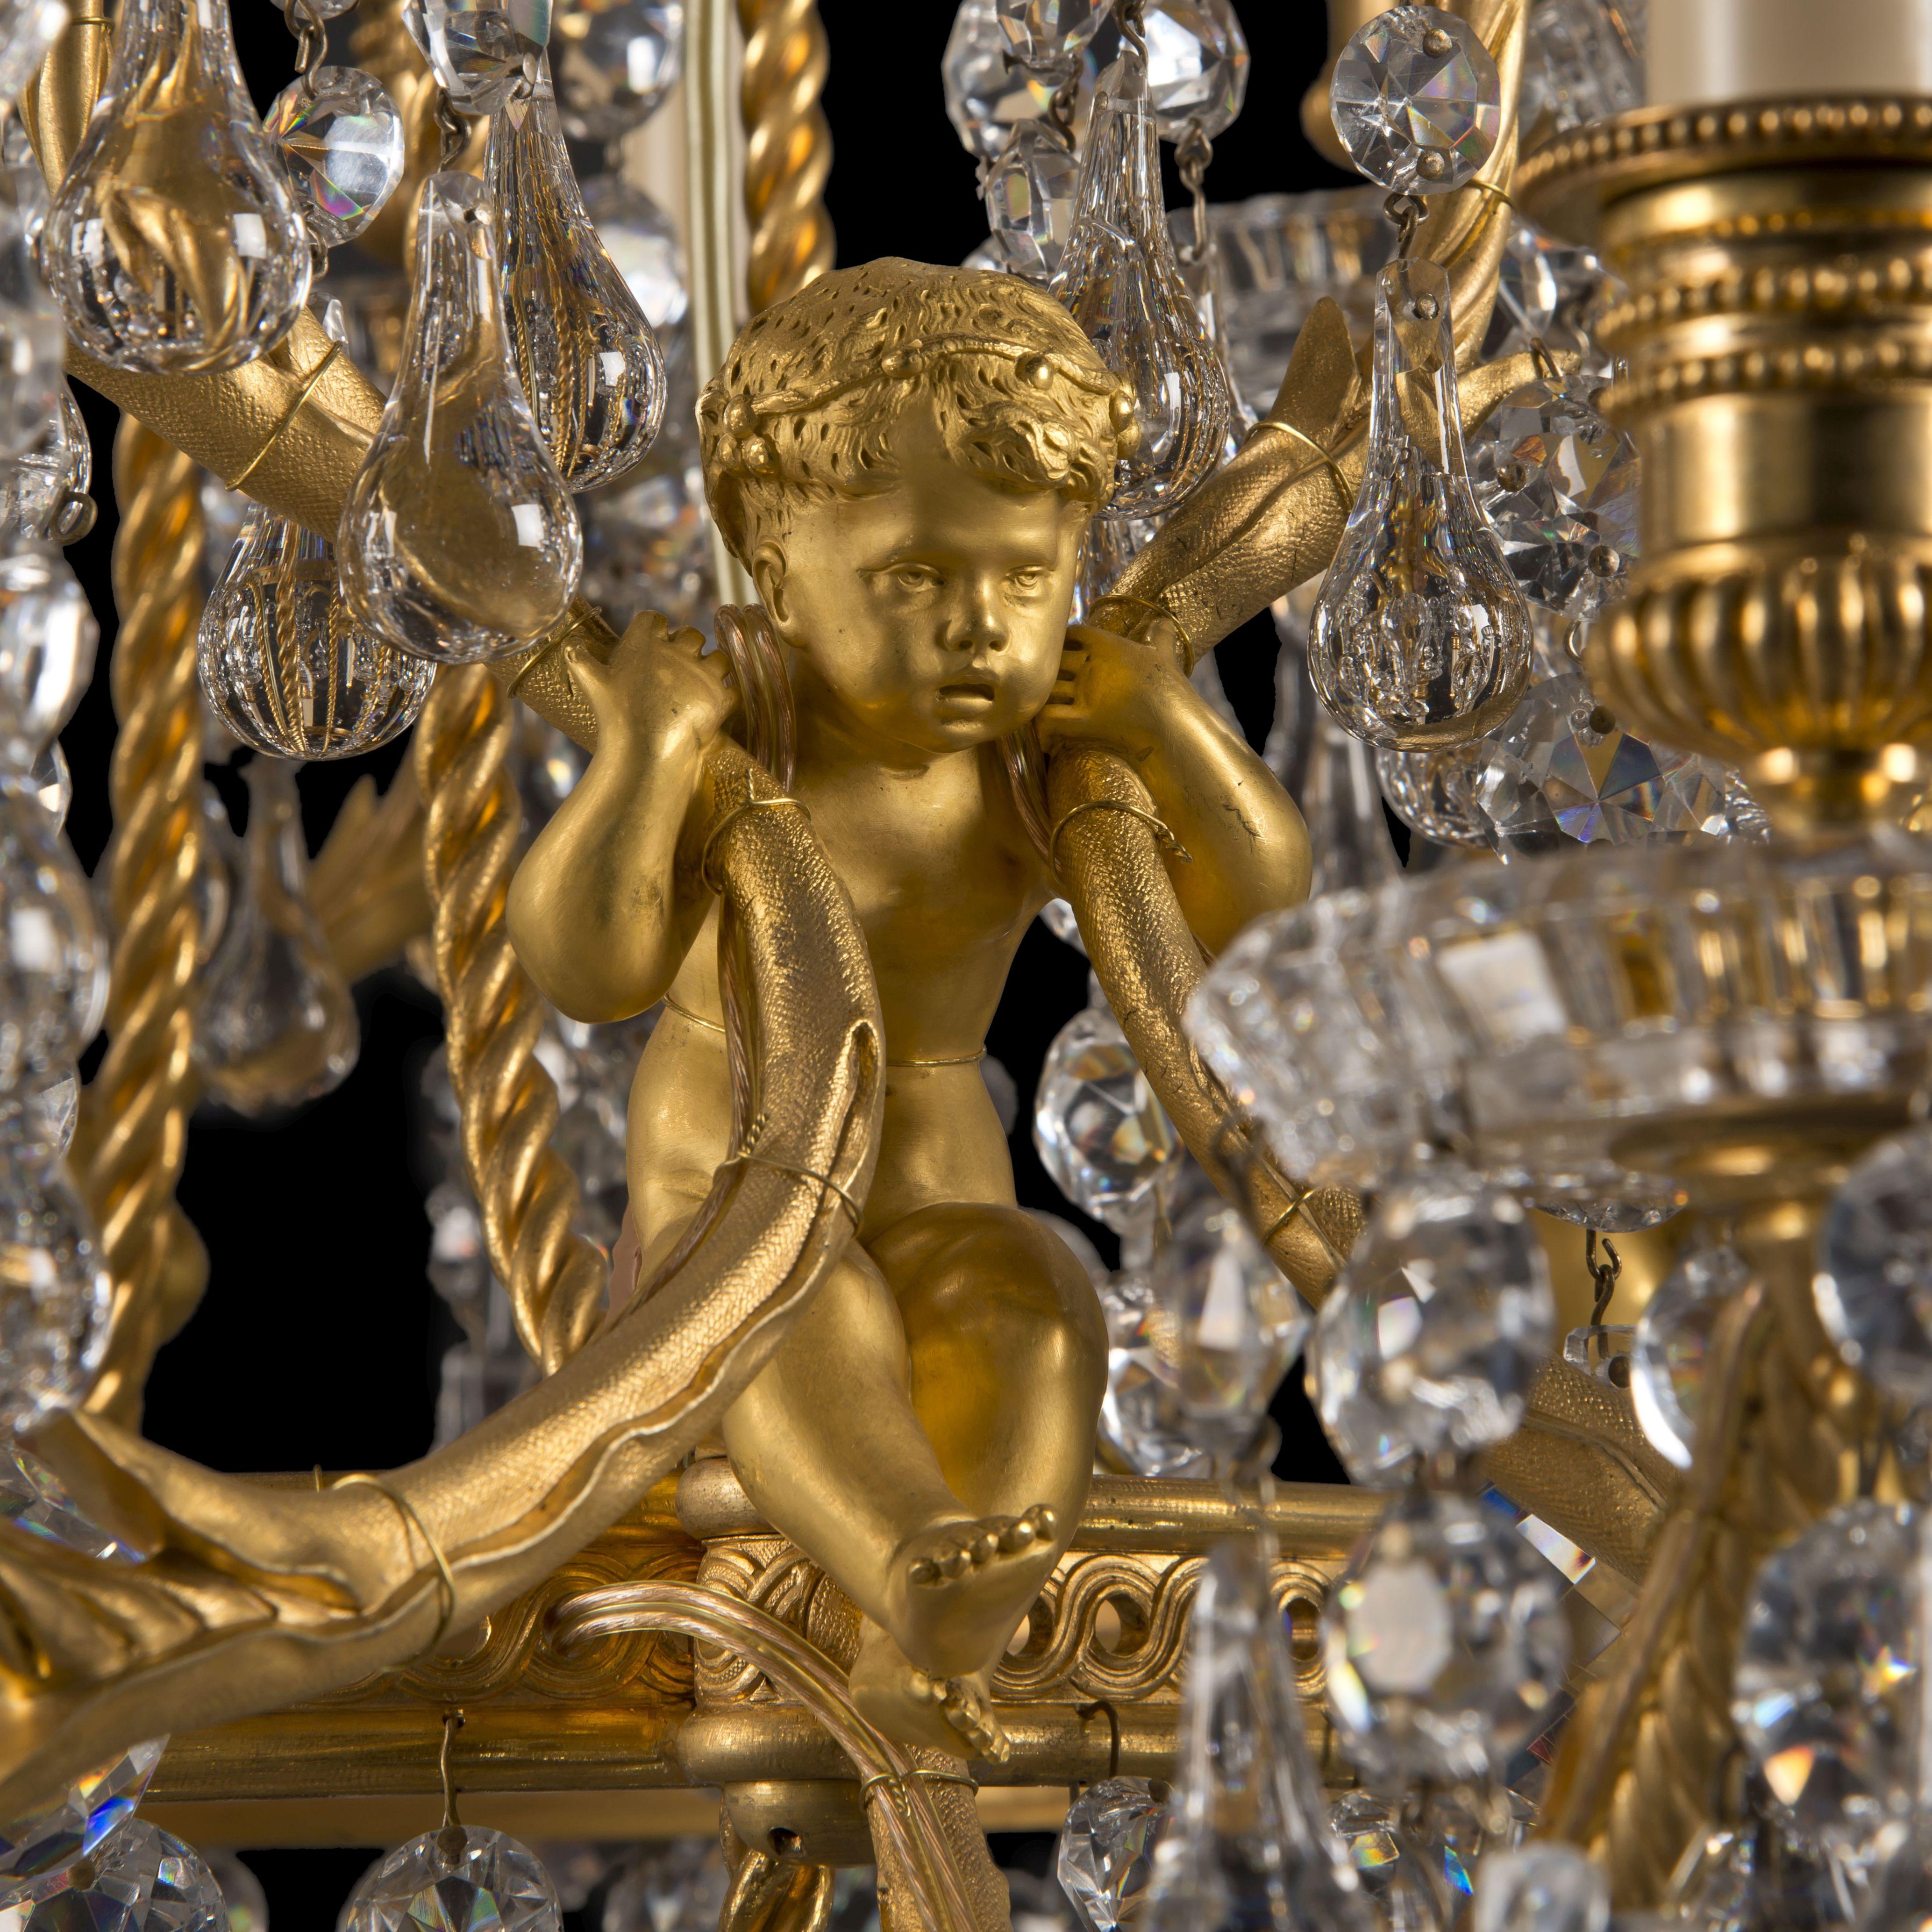 Ein feiner Kronleuchter mit zwanzig Lichtern im Stil Louis XVI aus vergoldeter Bronze und geformtem Glas von La Compagnie des Cristalleries de Baccarat.

Auf dem zentralen Stiel gestempelt 'Baccarat'. 
Geprägter Baccarat